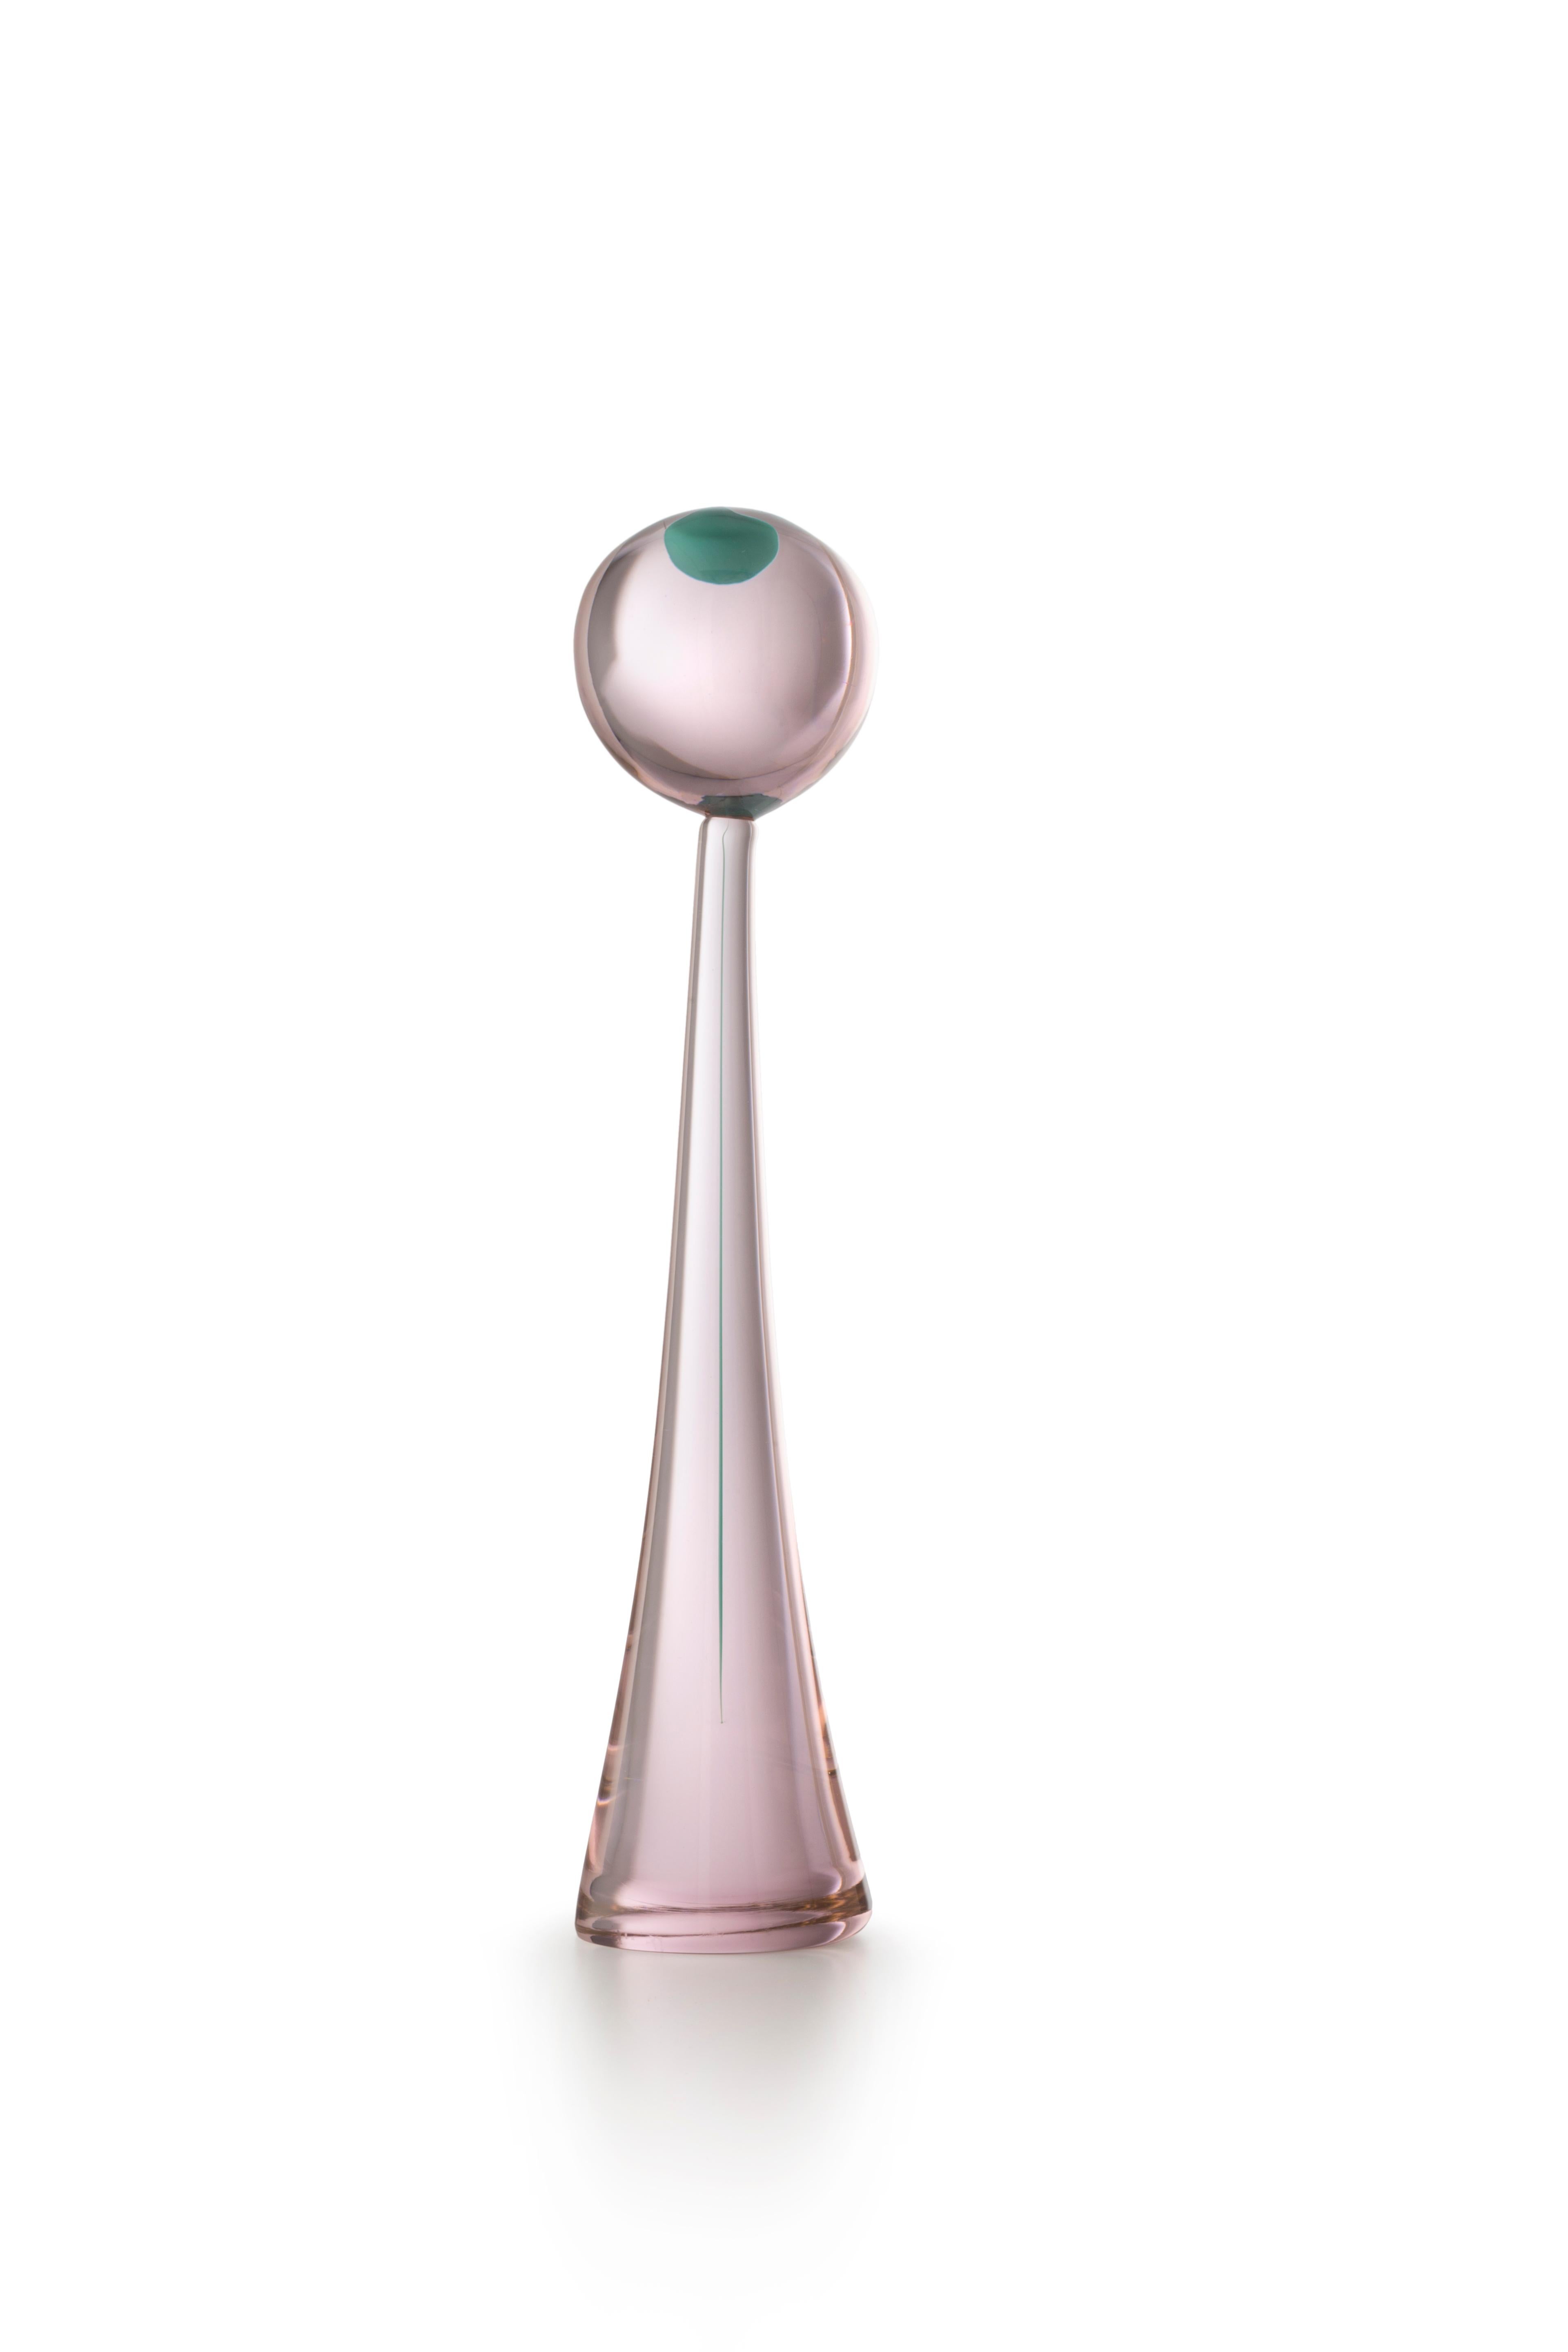 Pink (01795) Small Sphere Elementi Lagunari in Murano Glass by Luciano Gaspari